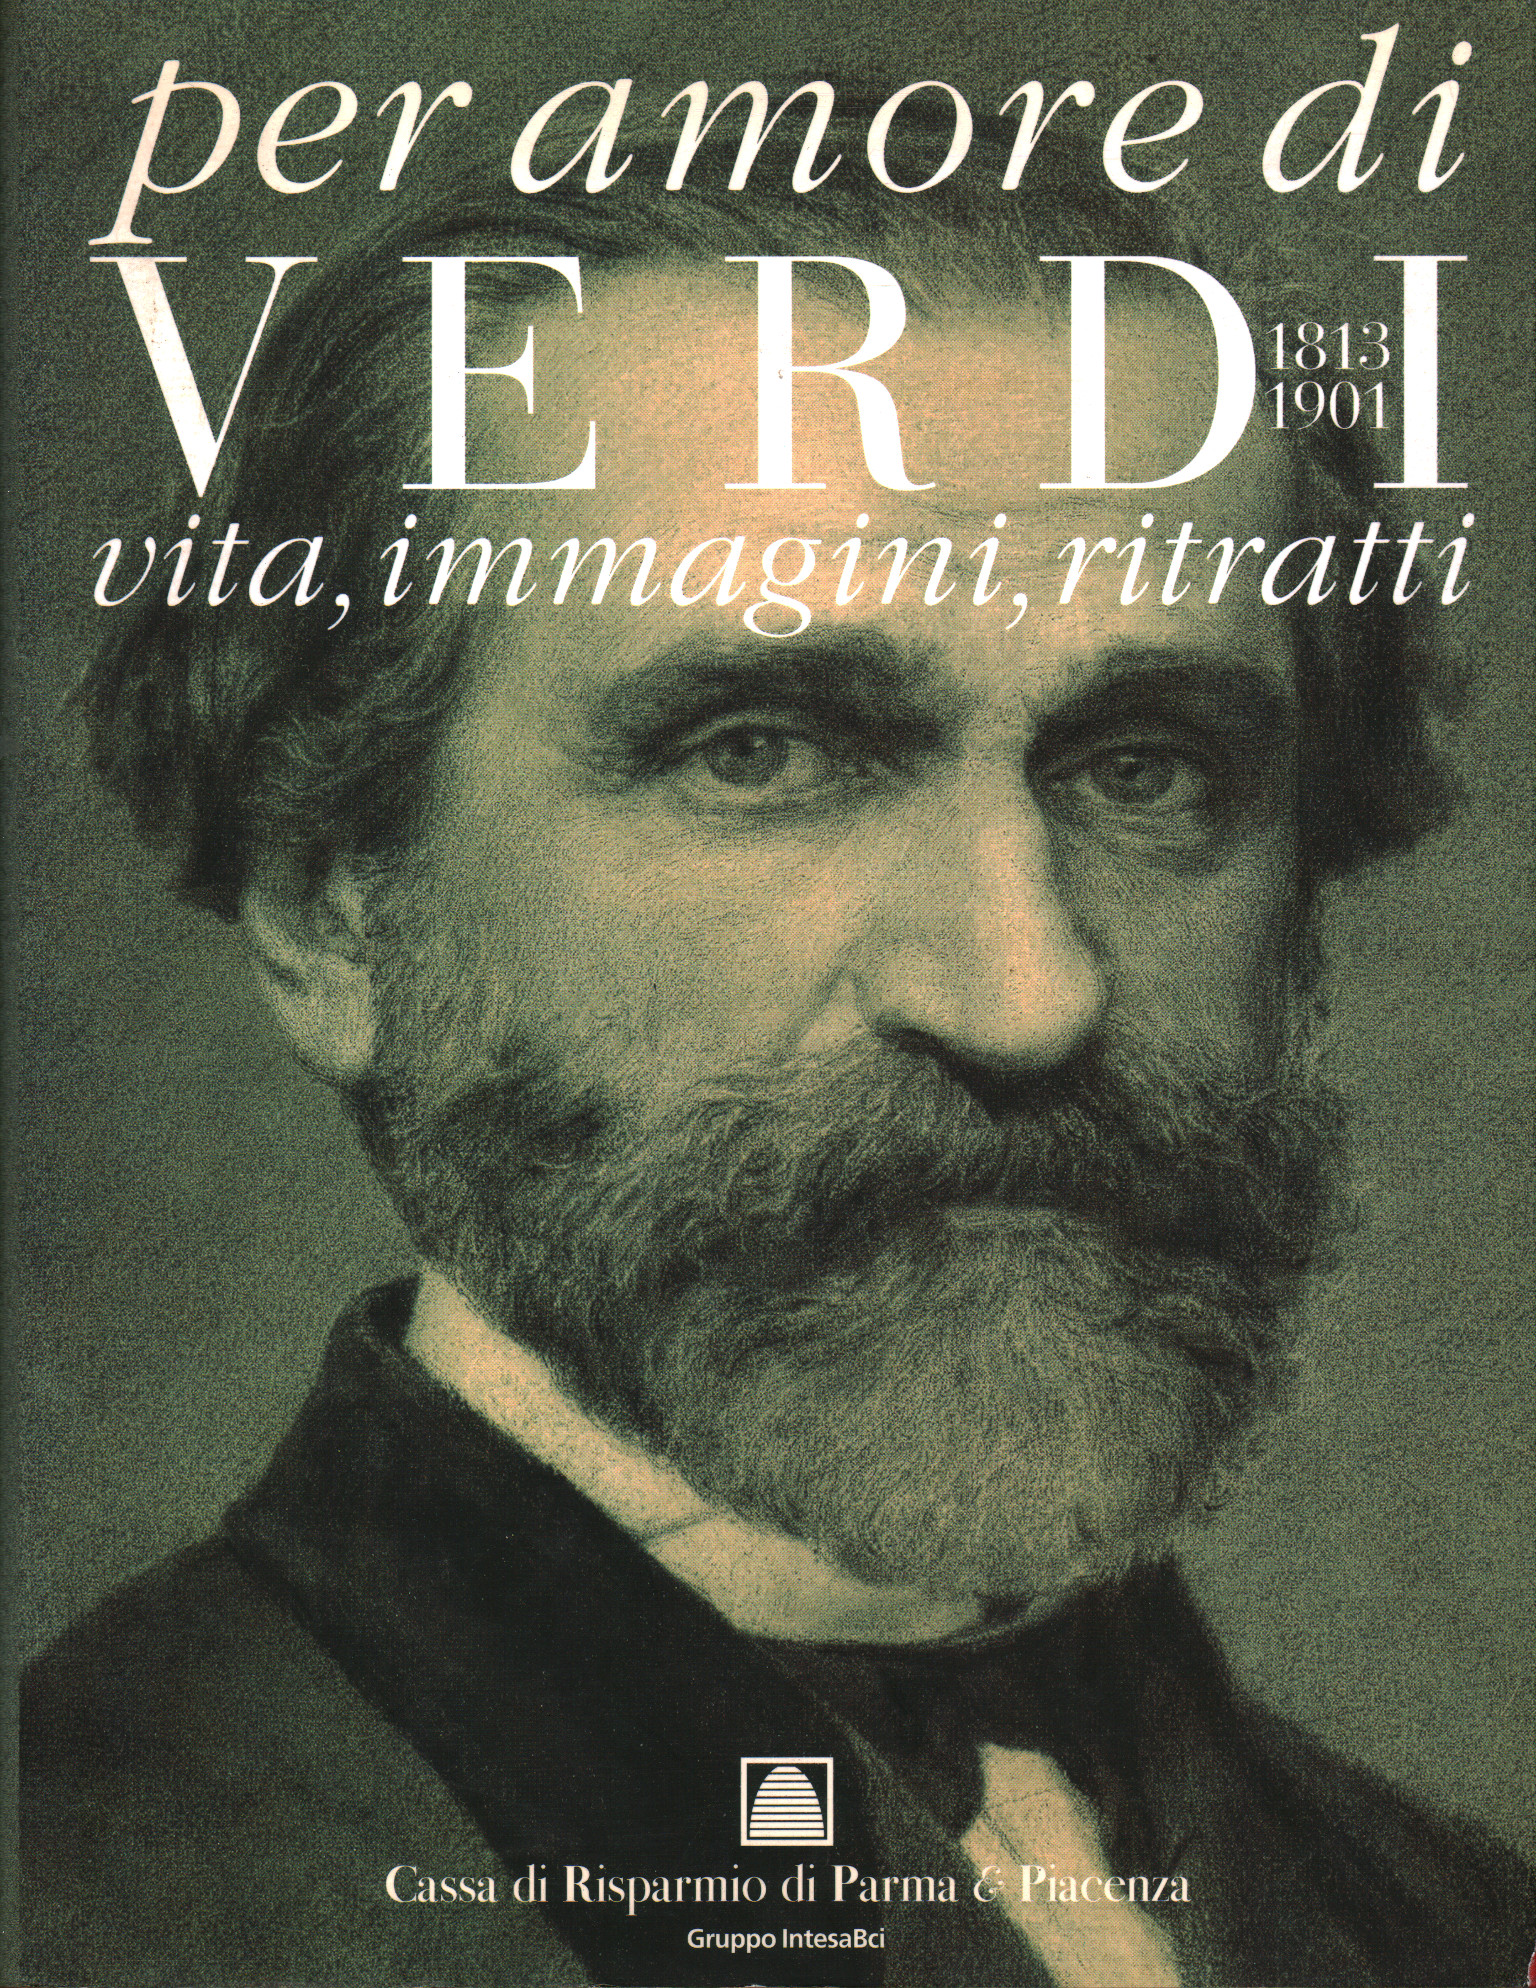 Per amore di Verdi 1813-1901, Marco Marica